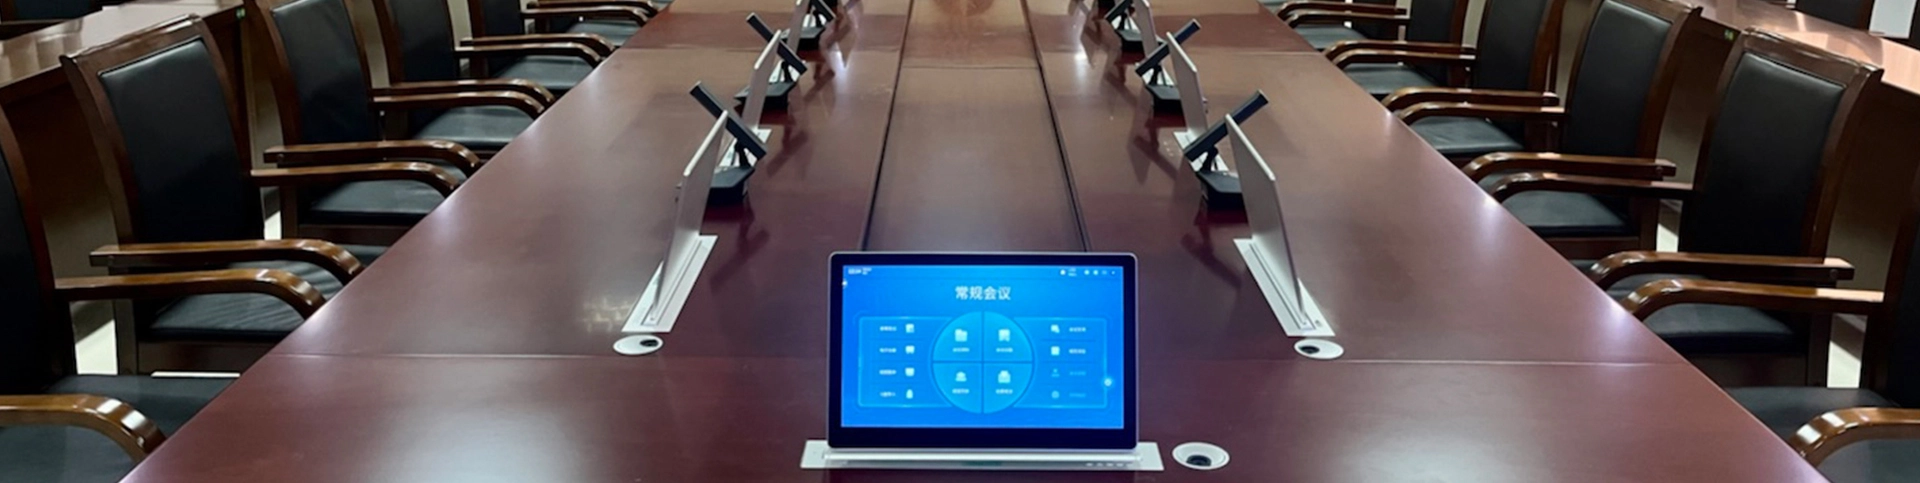 Sistema de conferencia sin papel para el proyecto de la Corte de Zhanjiang